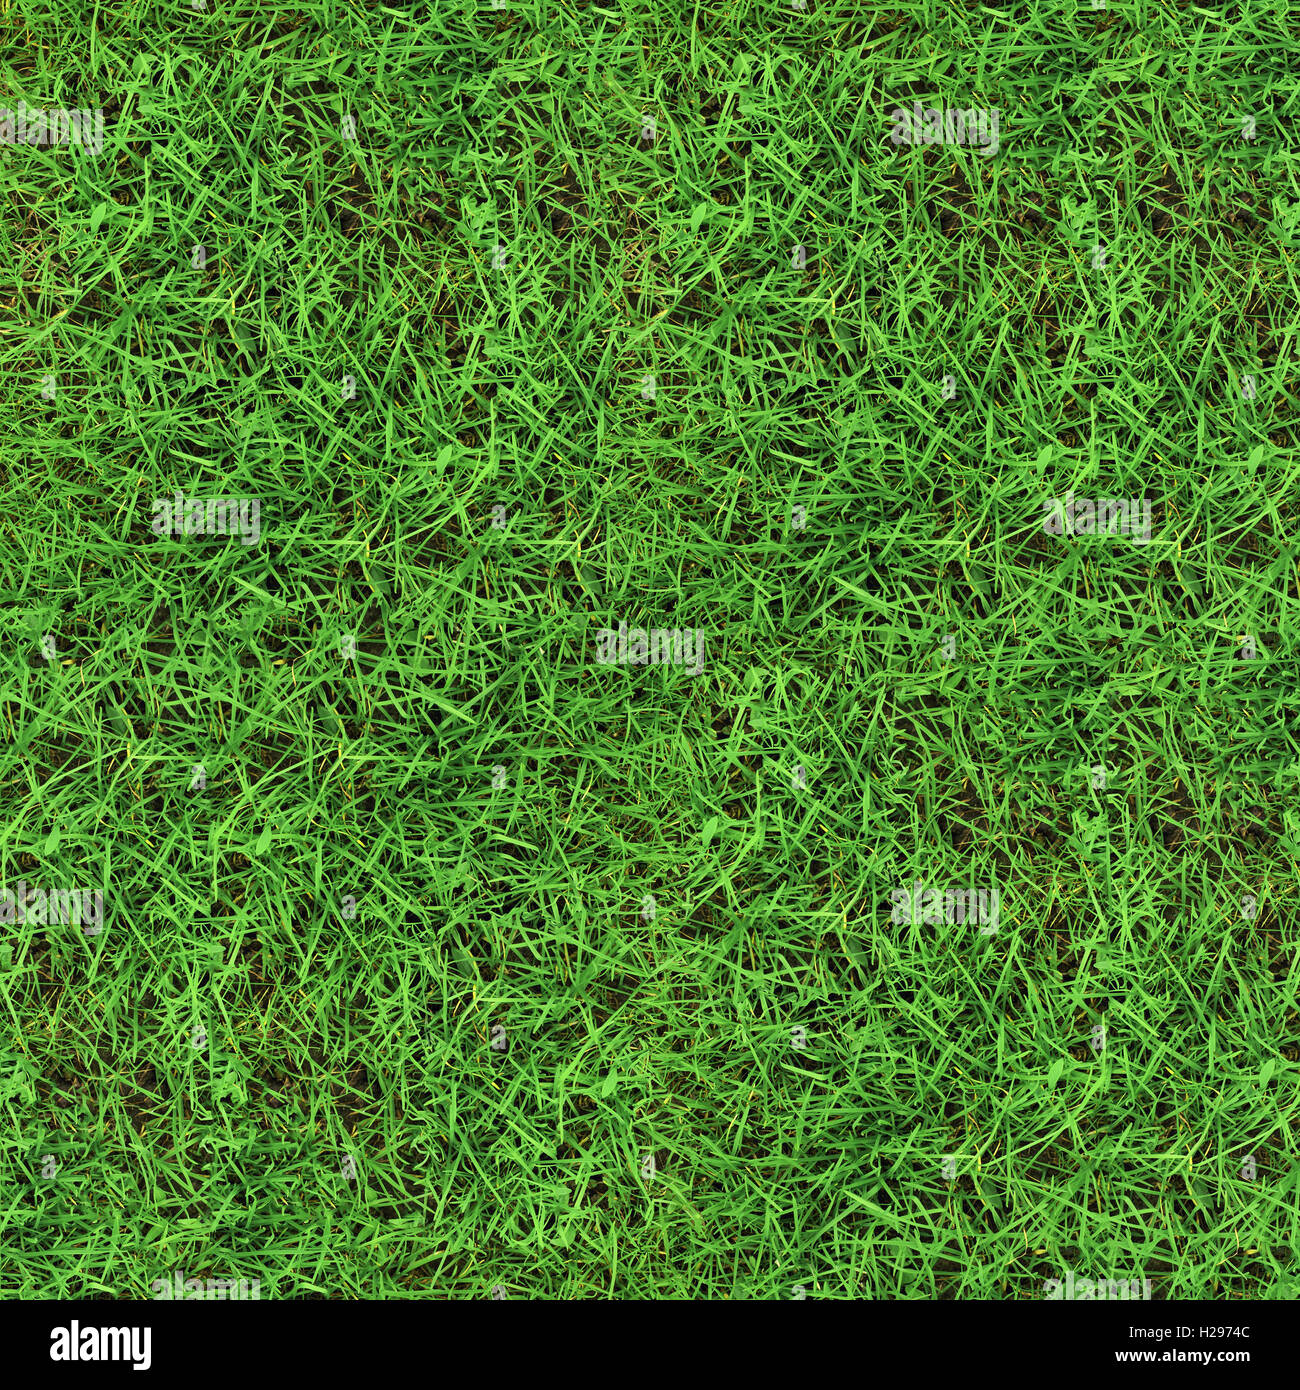 Green grass seamless texture Stock Photo